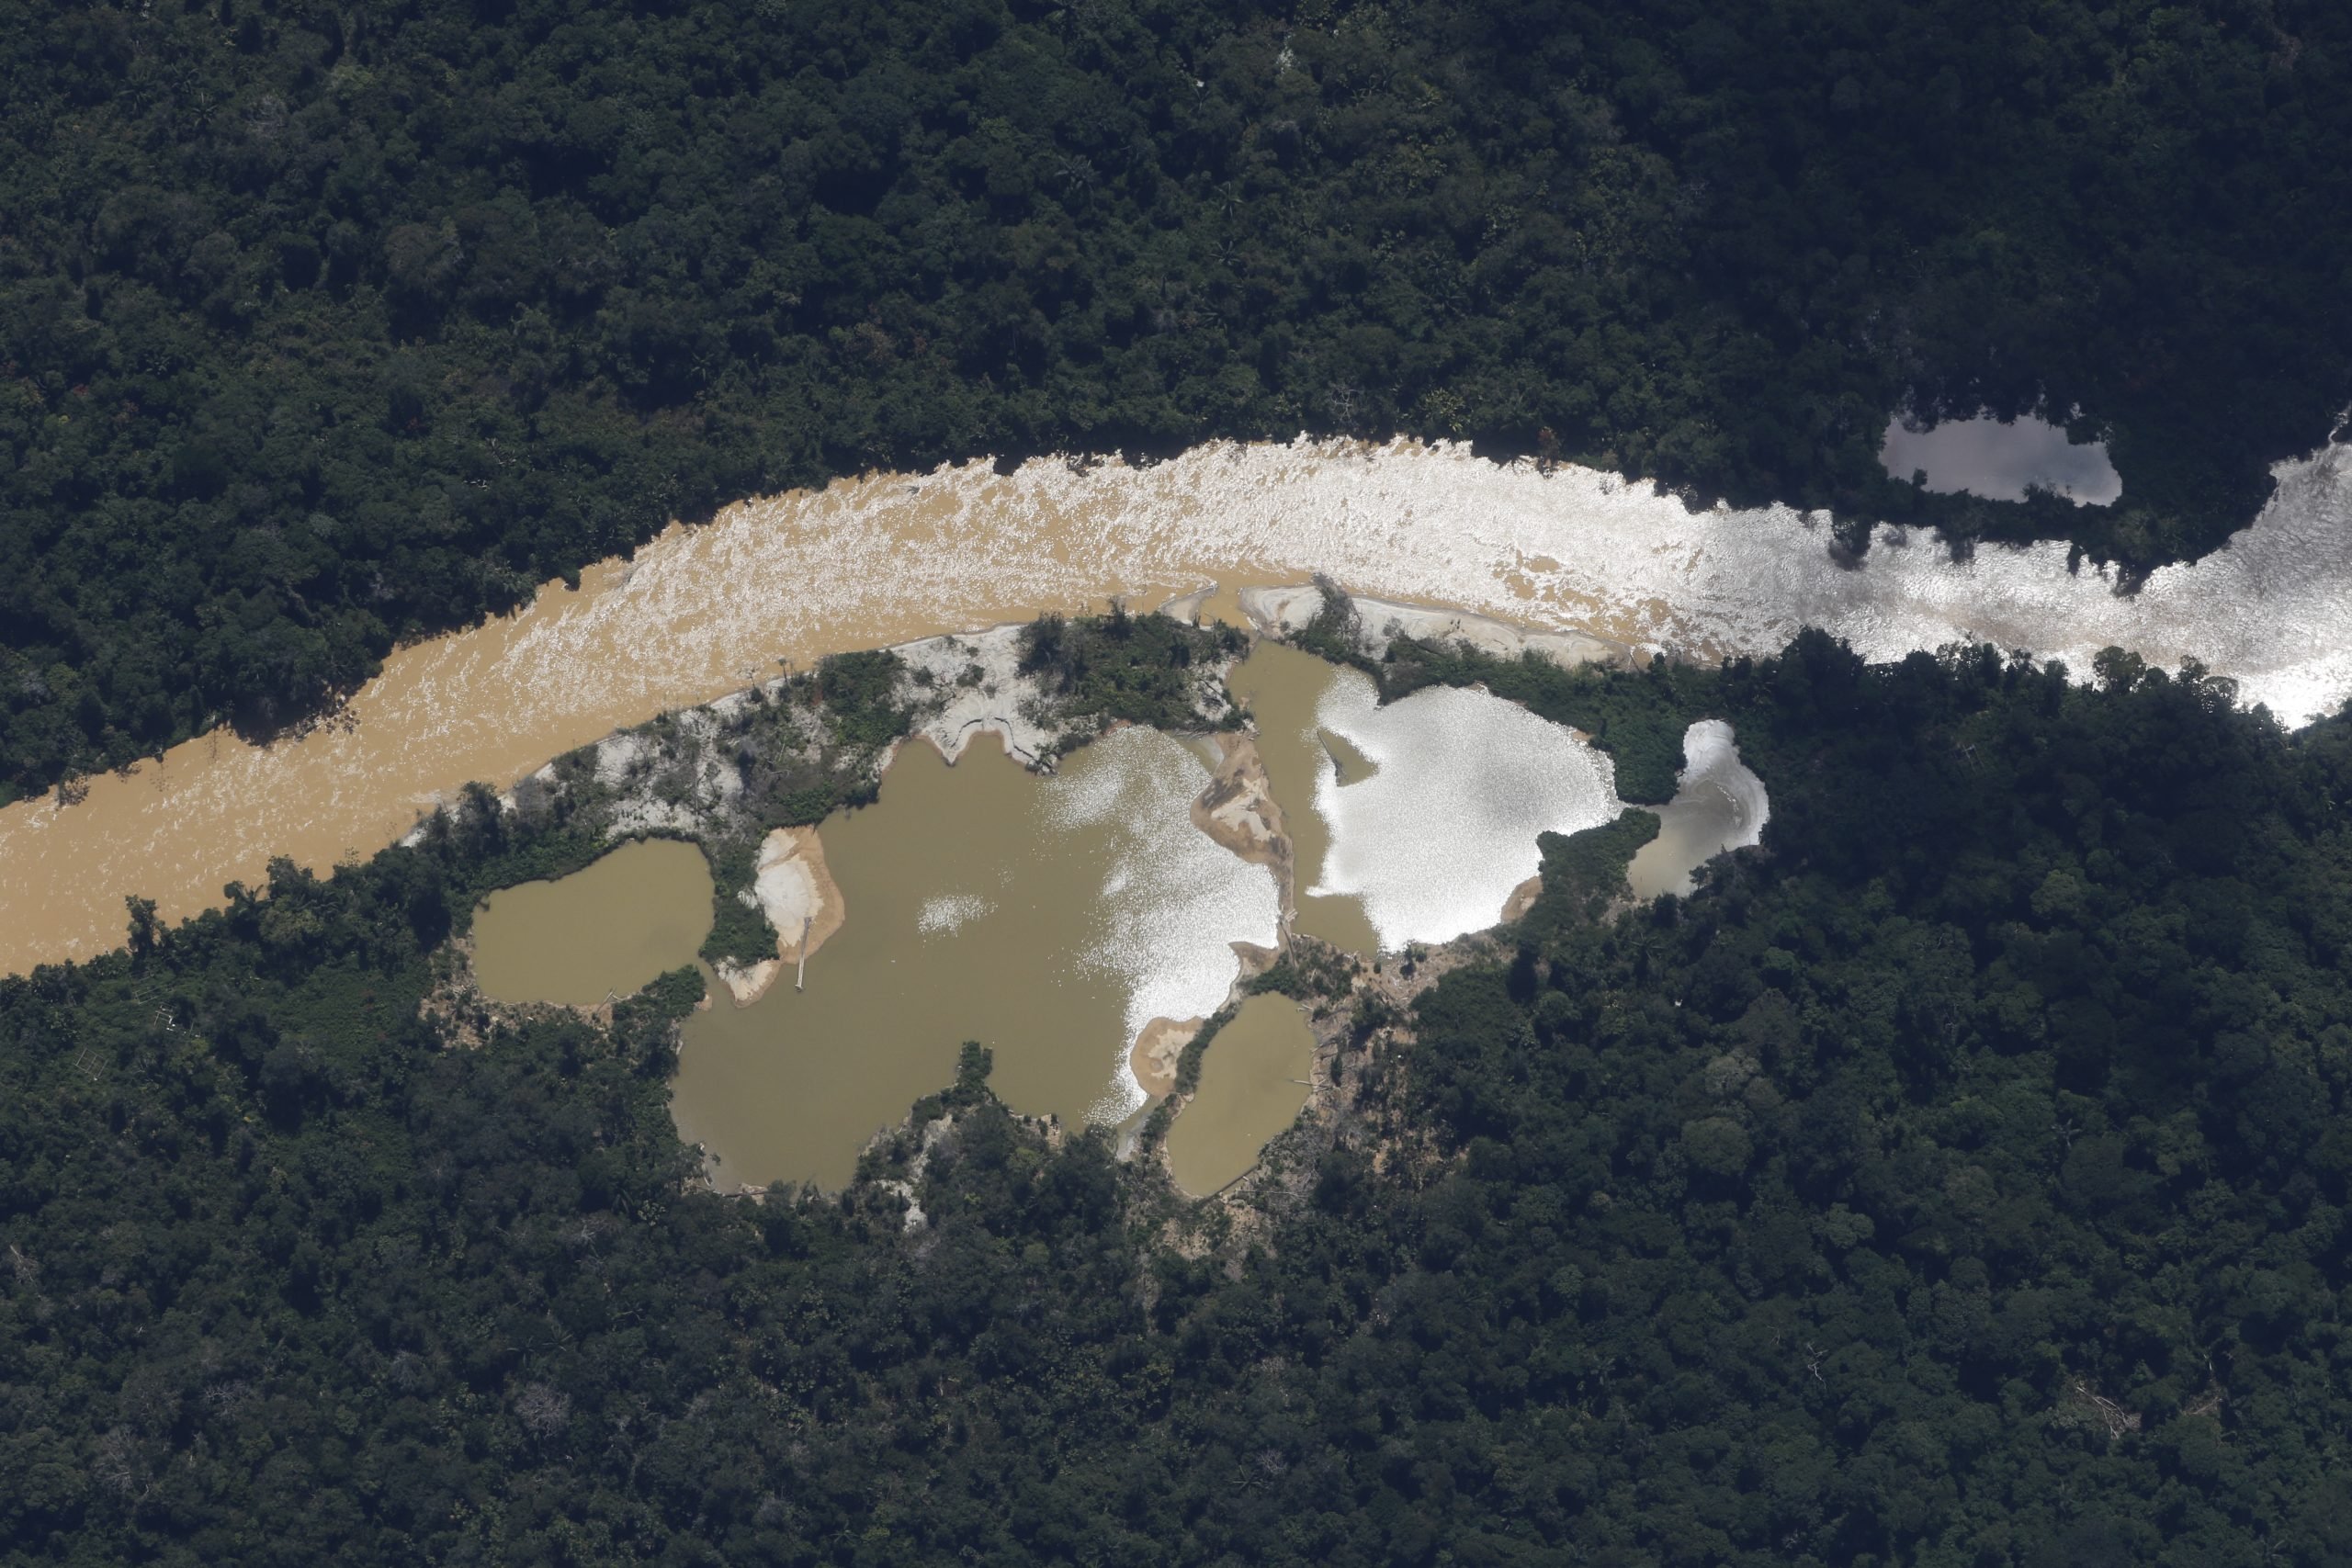 Vista aérea de garimpo no território Yanomami